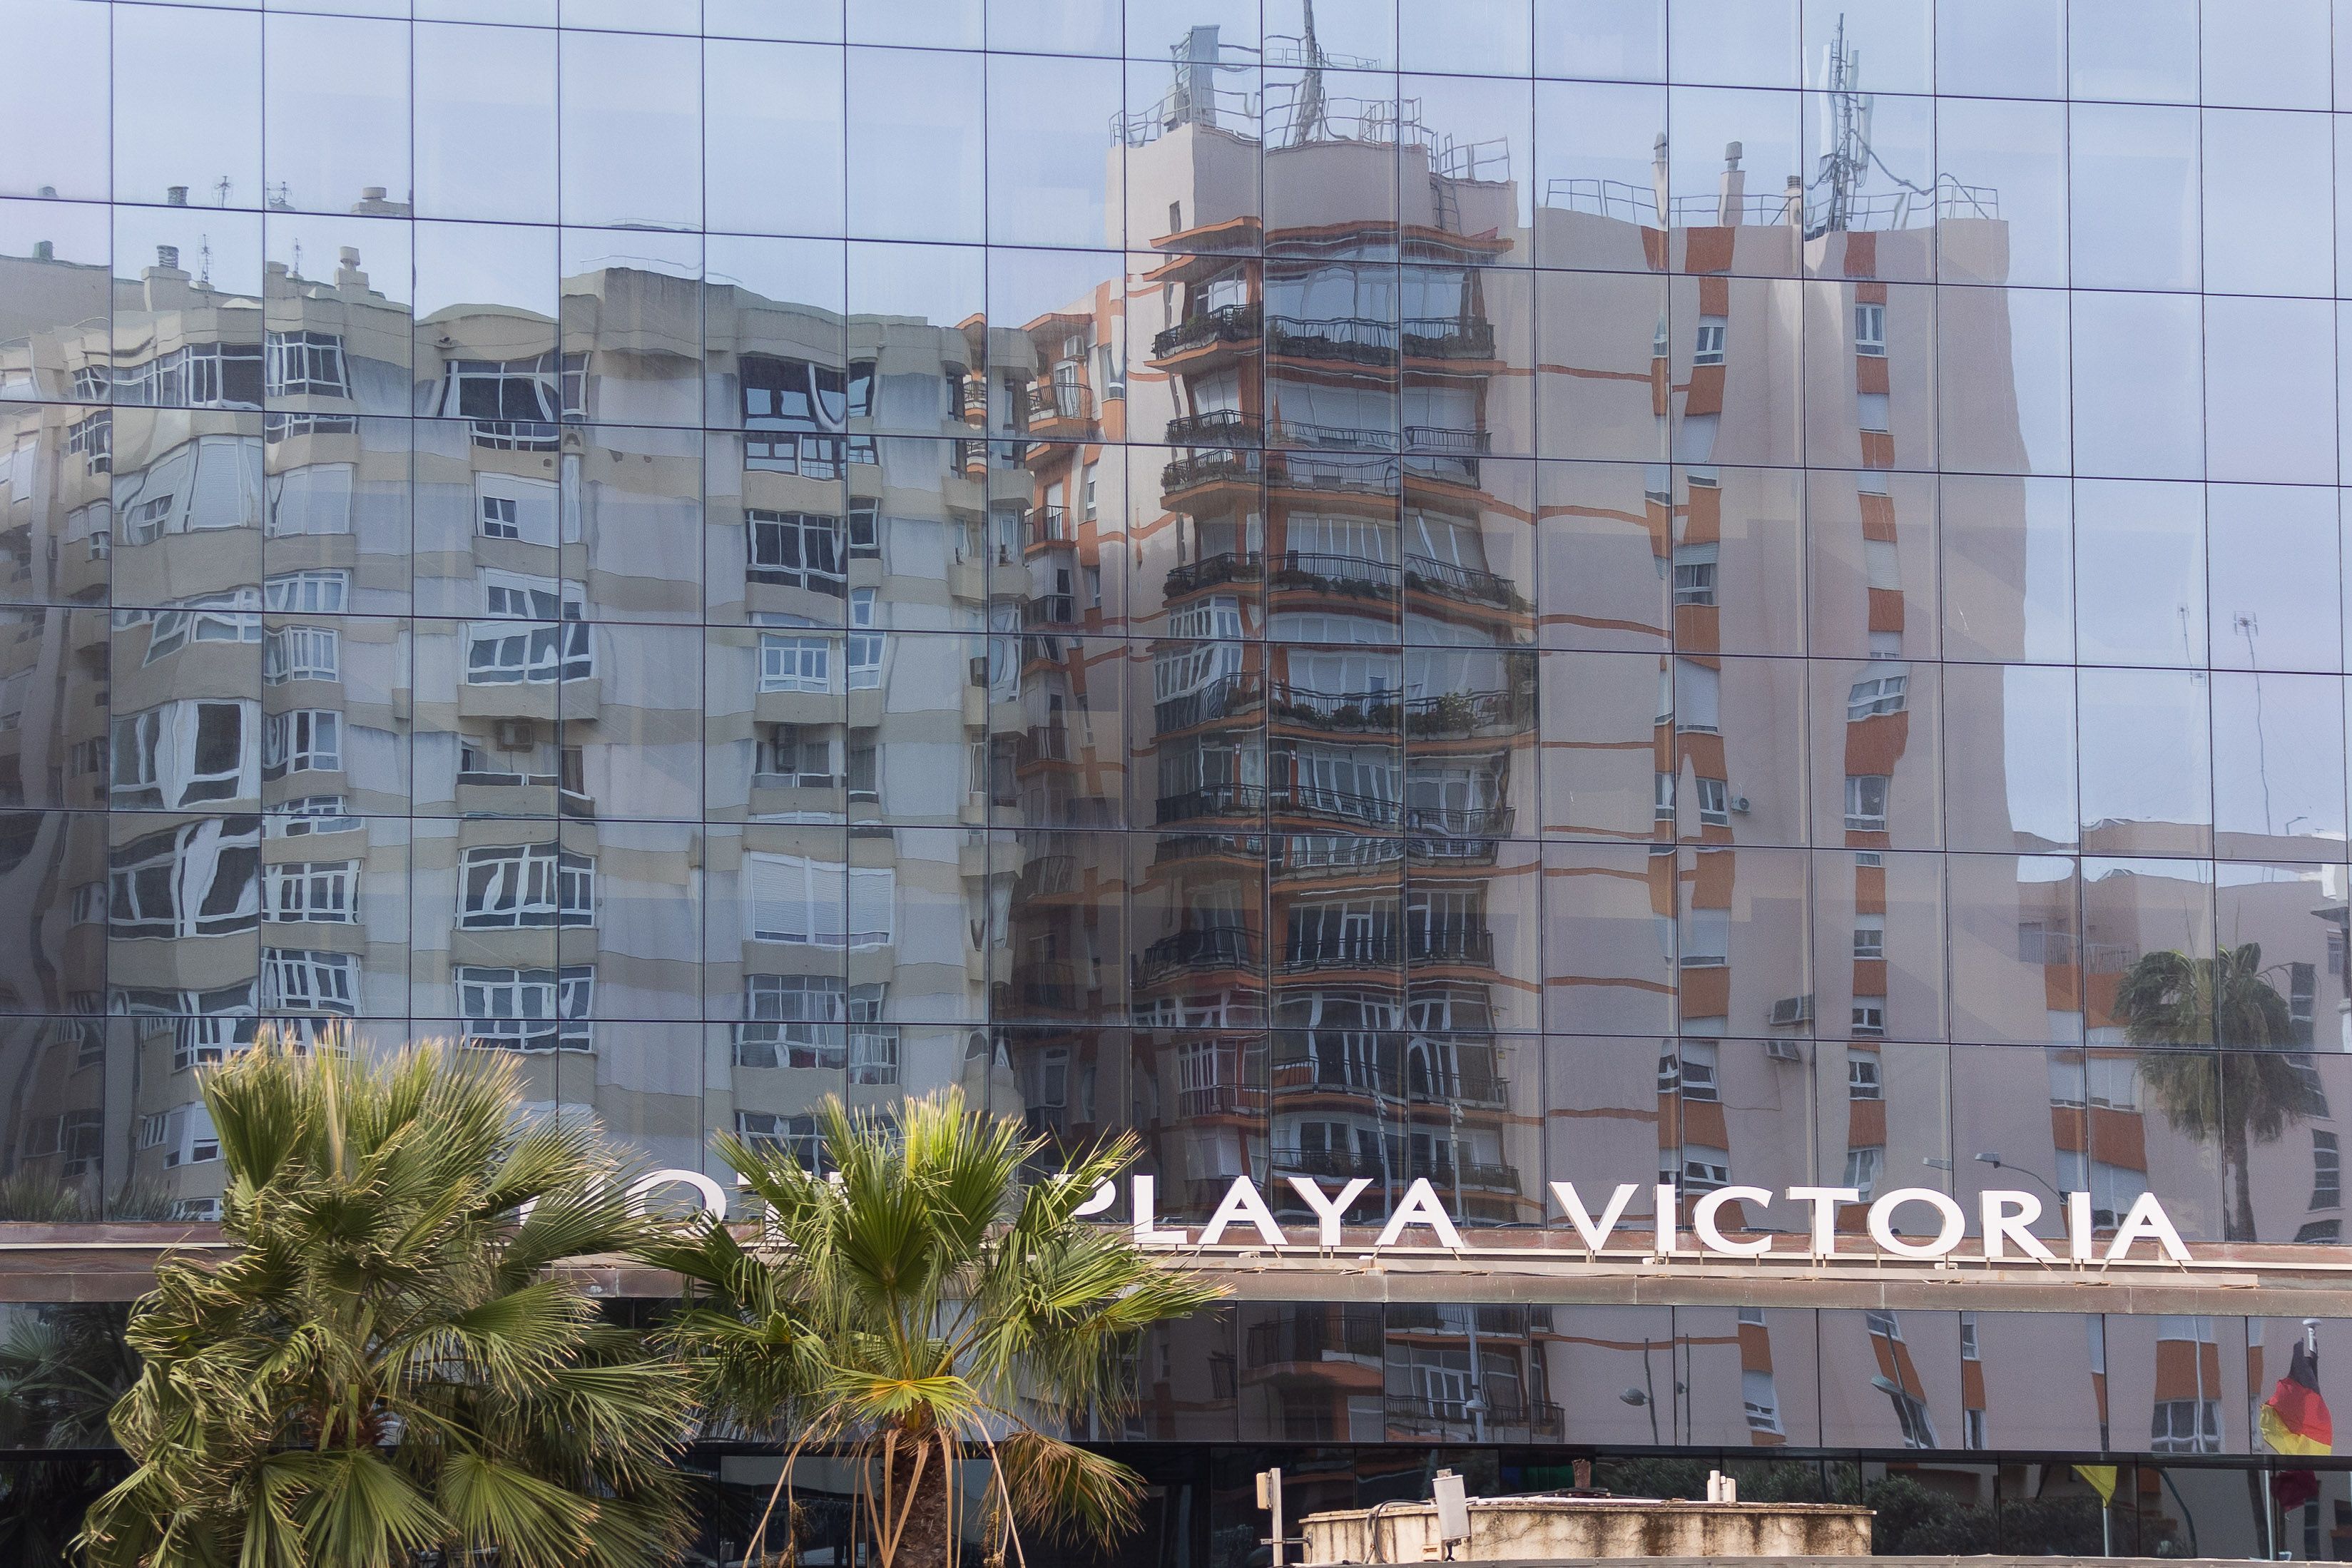 Fachada del hotel Playa Victoria, con pisos junto al mar reflejados, en Cádiz, en una imagen de archivo.